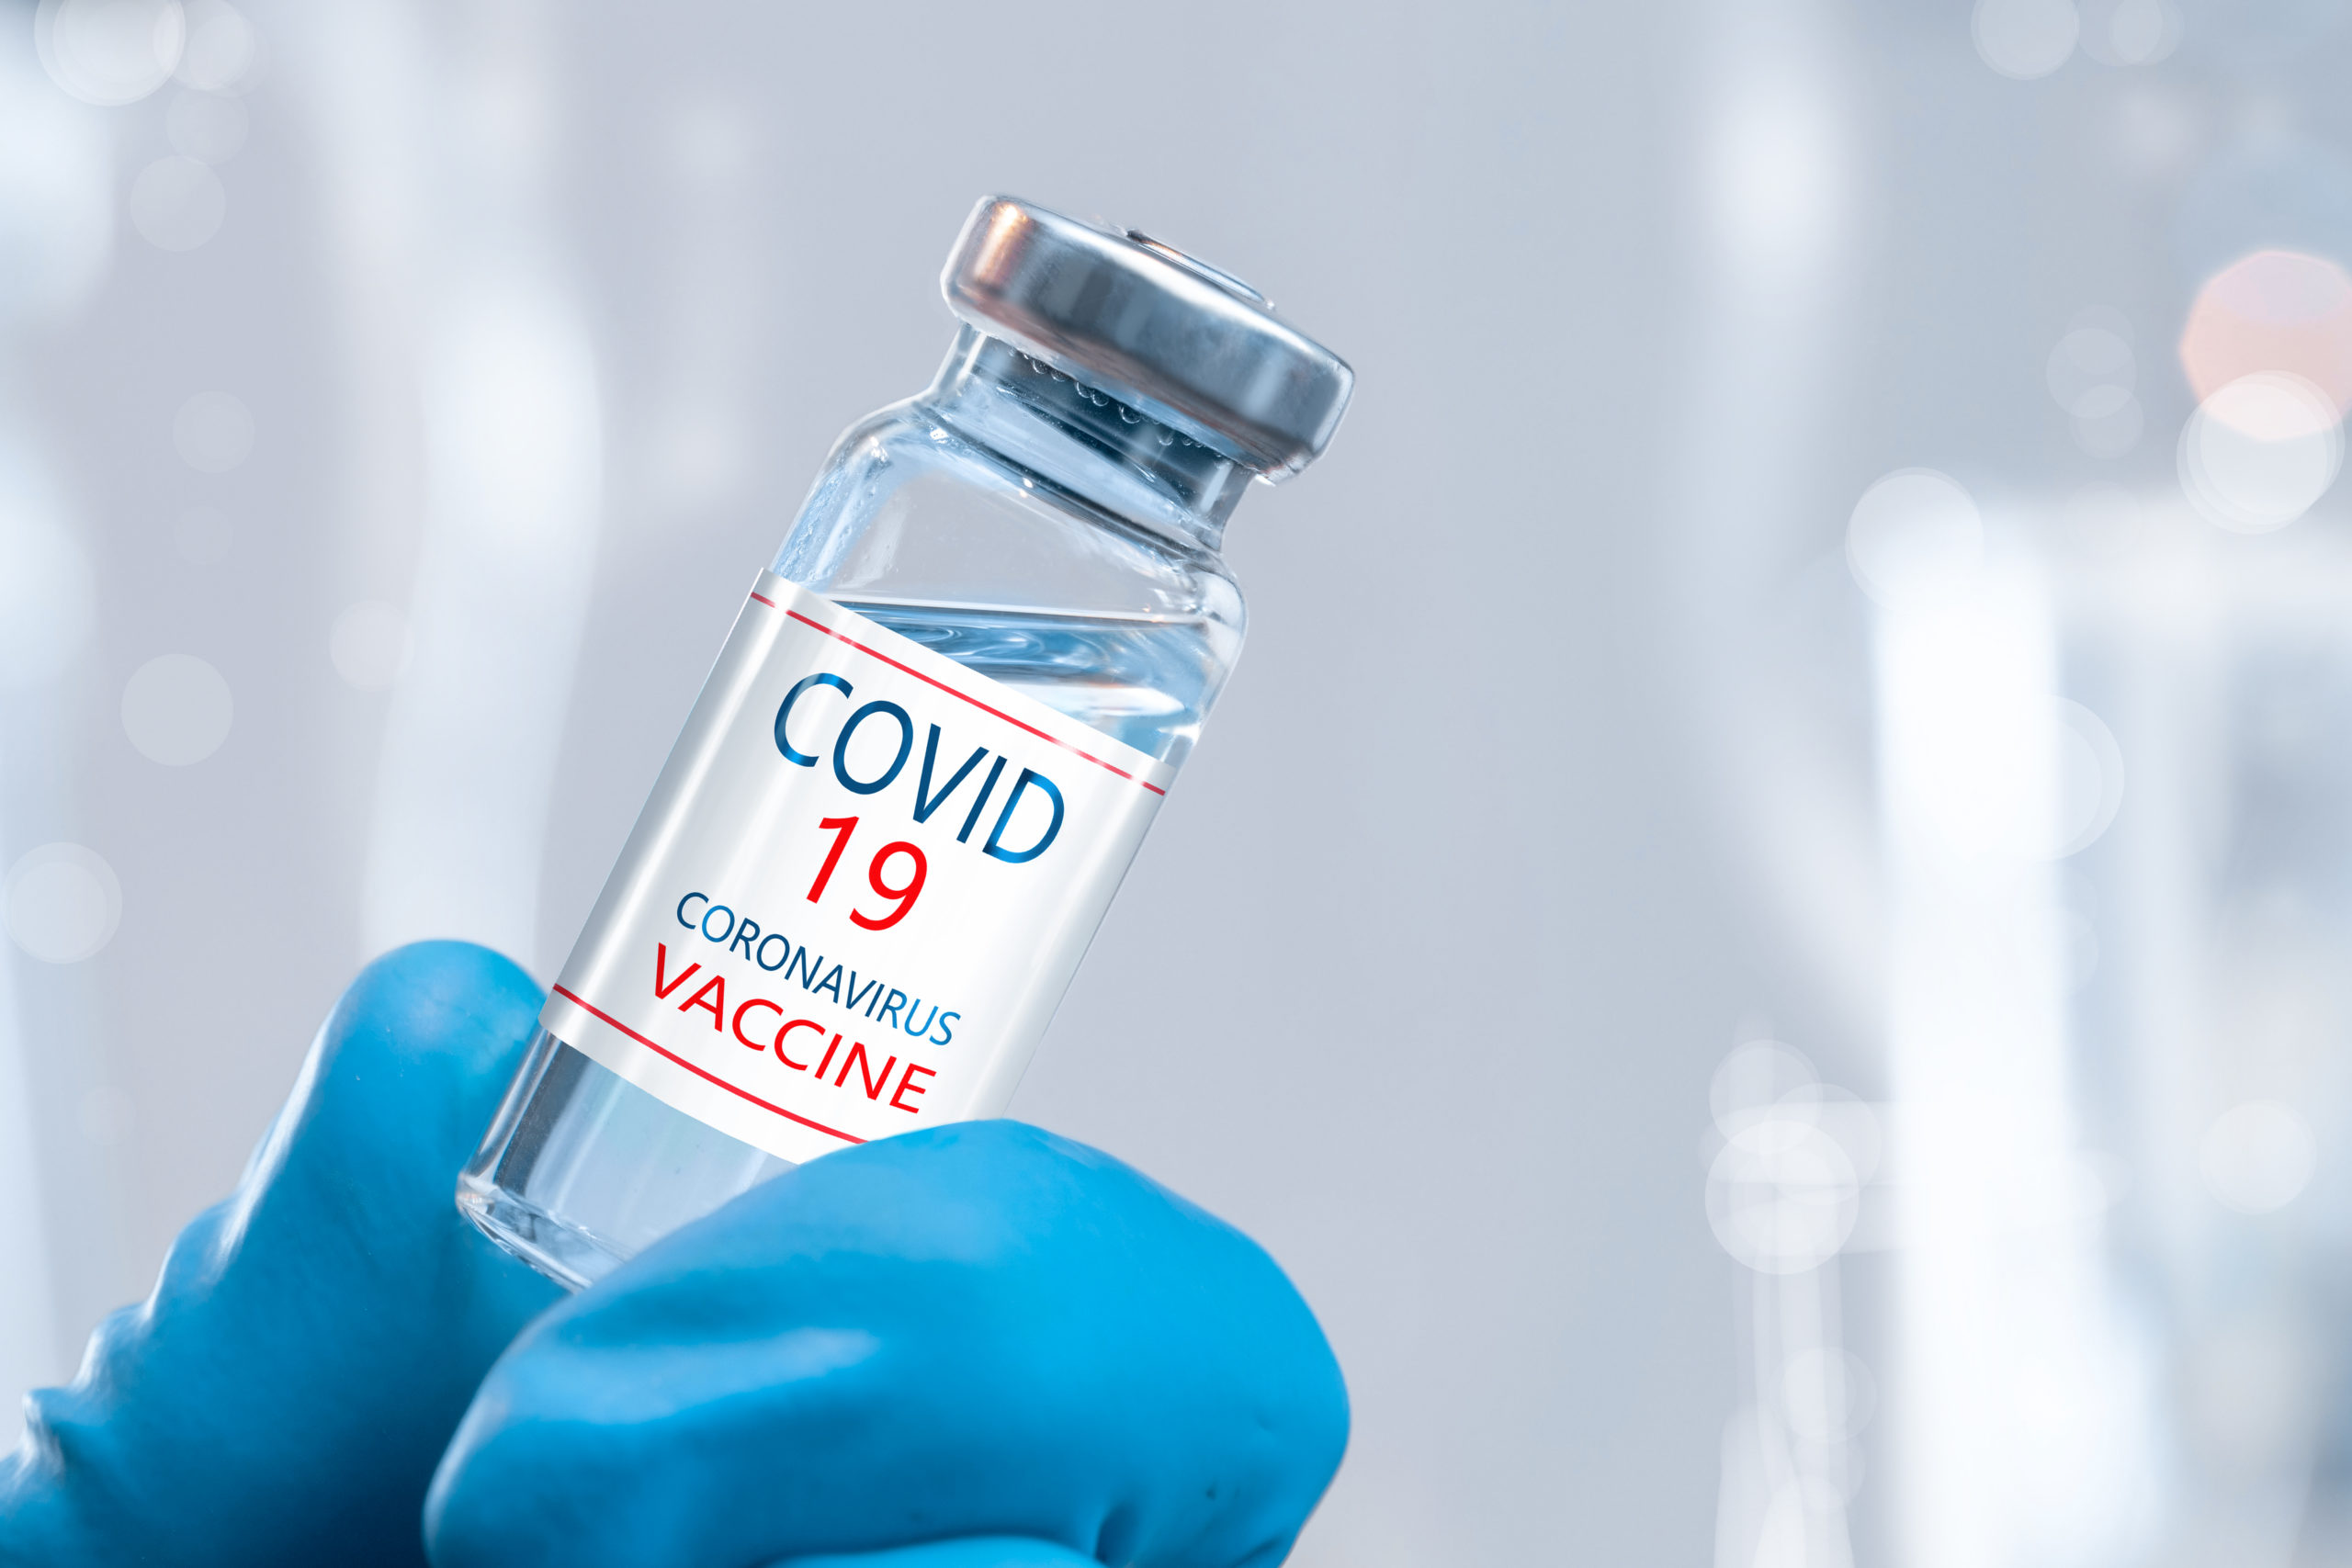 Covid-19 vaccine photo